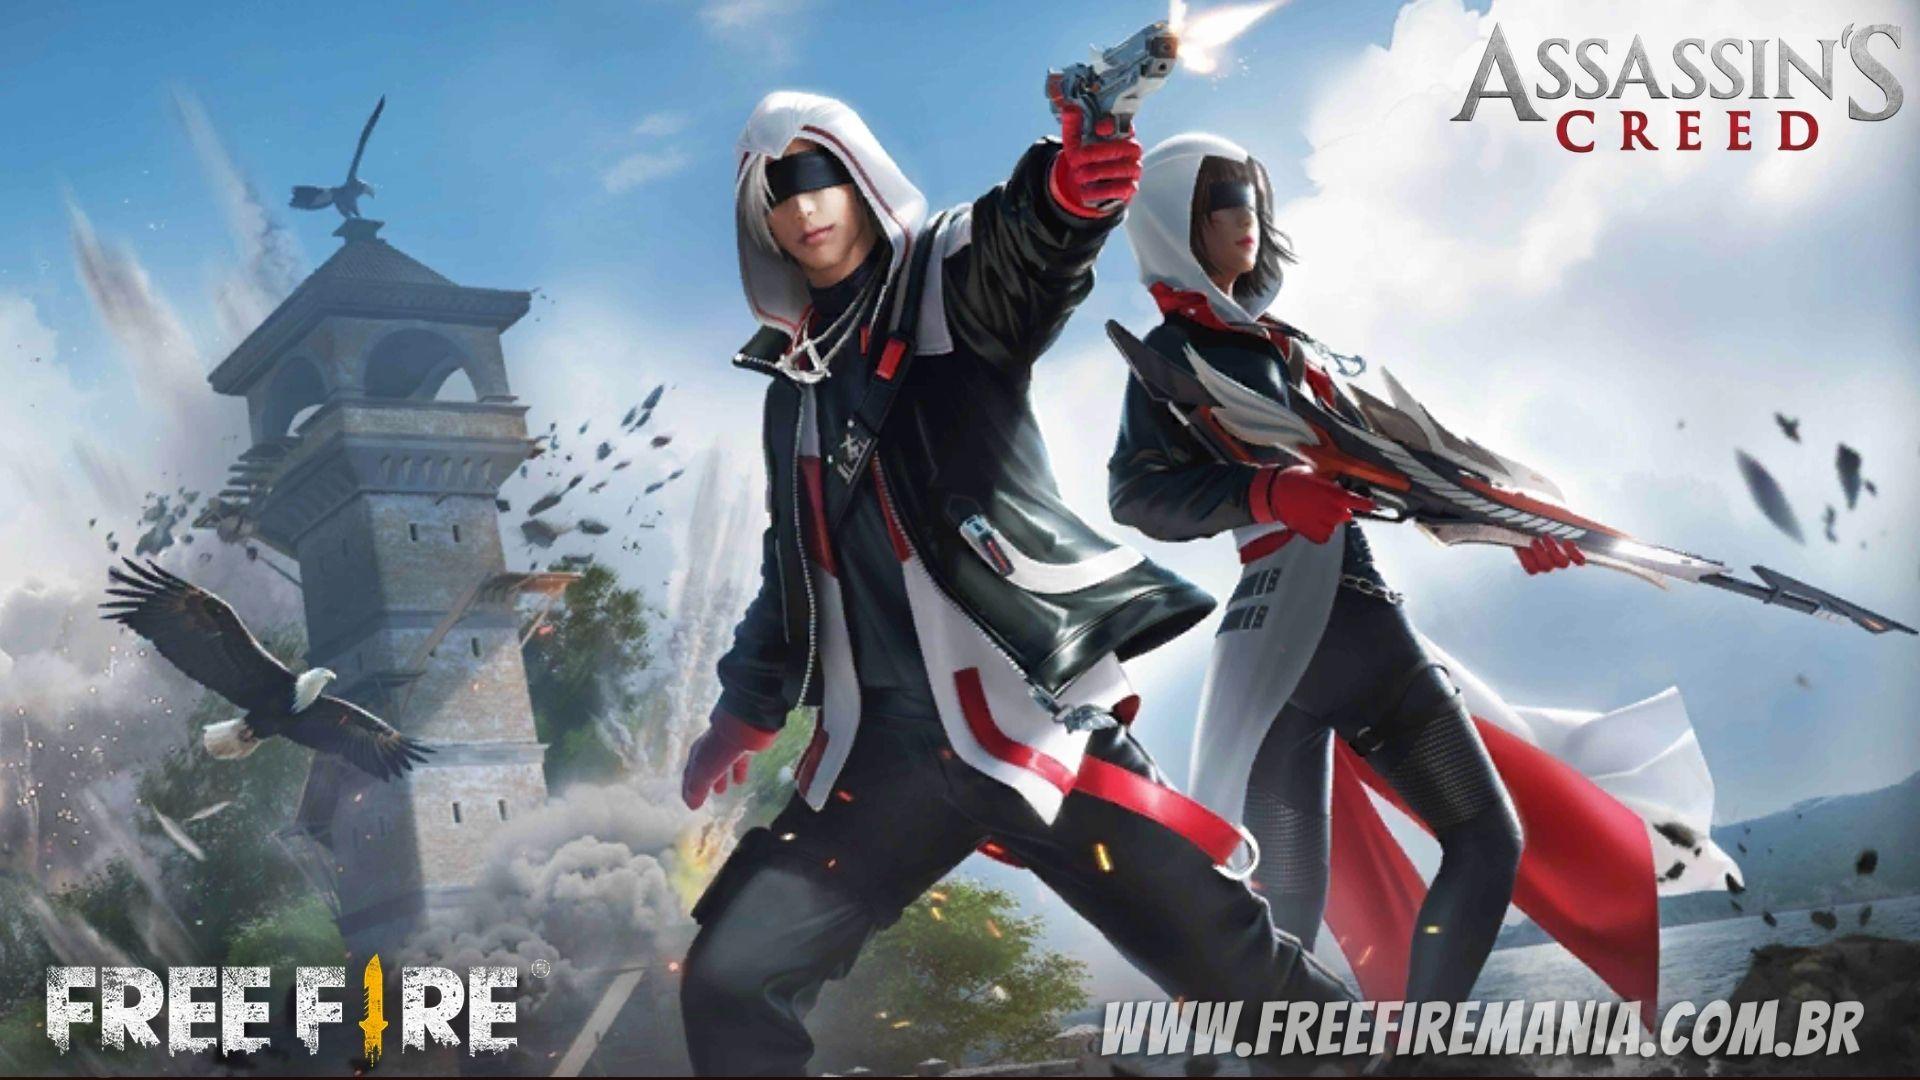 Free Fire receberá itens da parceria com Assassin's Creed; saiba como conseguir